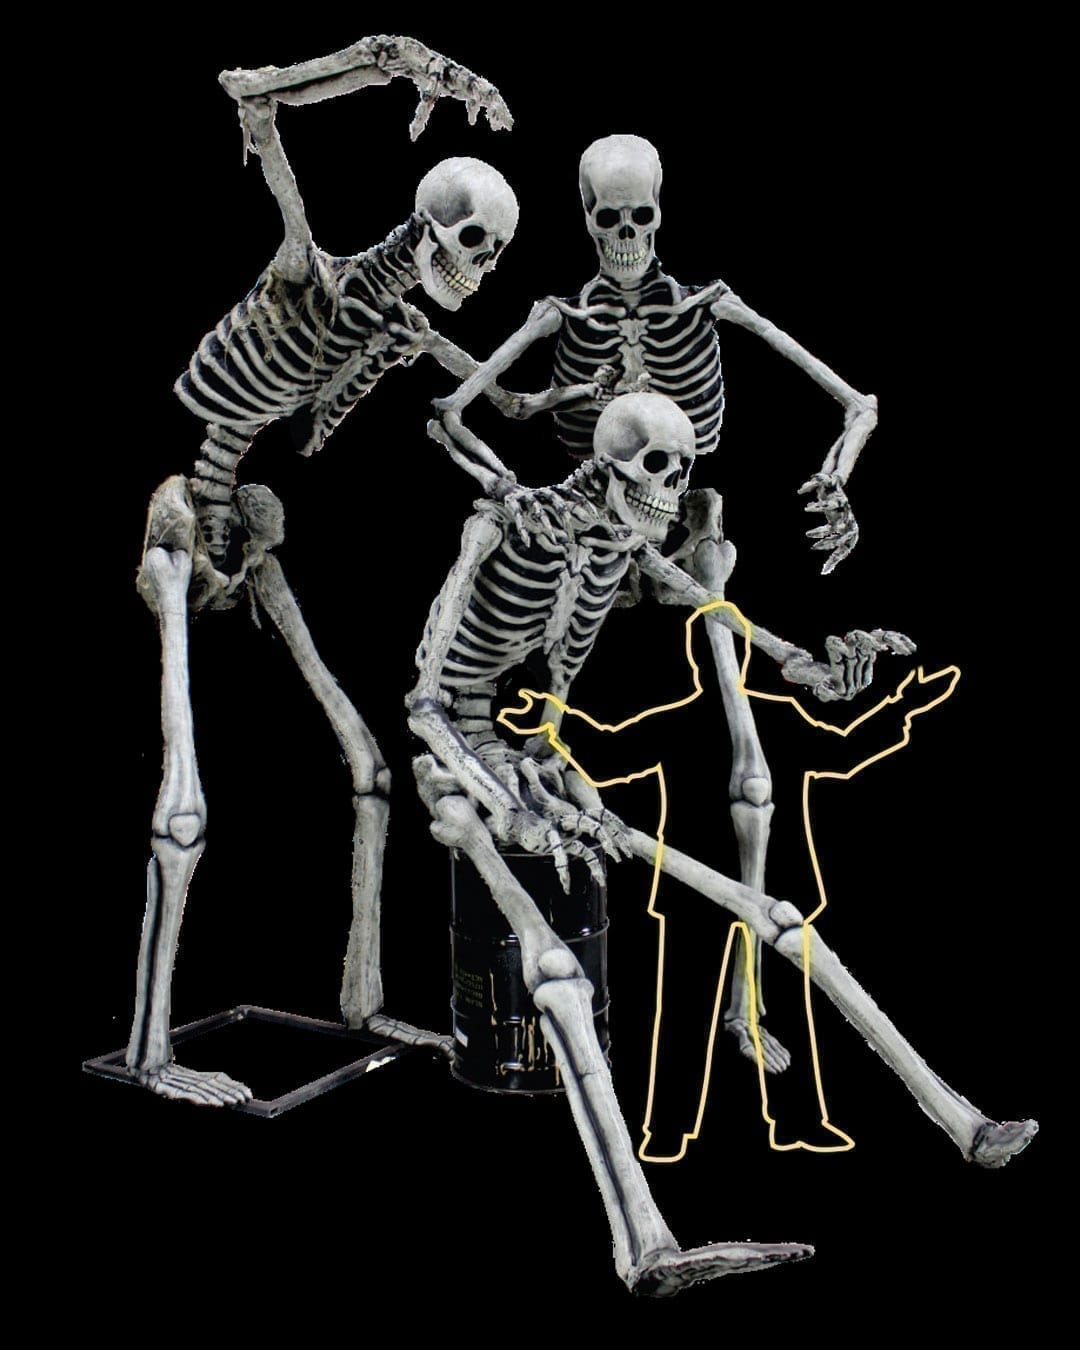 Super Skeleton Photo Op